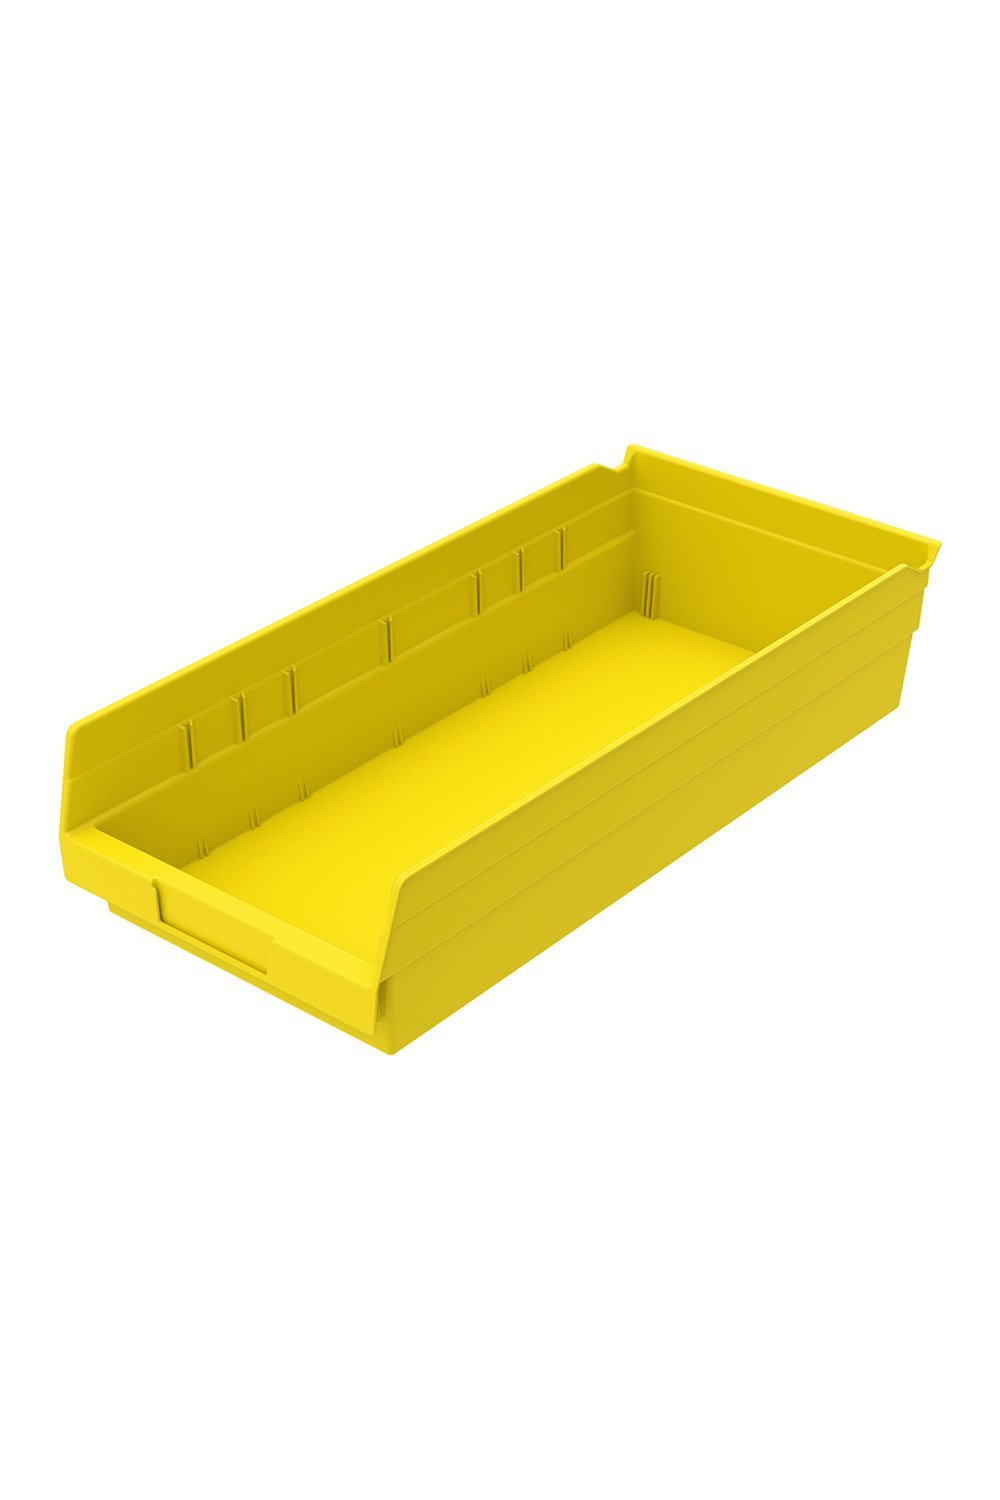 Shelf Bin for 18"D Shelves Bins & Containers Acart 17-7/8'' x 8-3/8'' x 4'' Yellow 